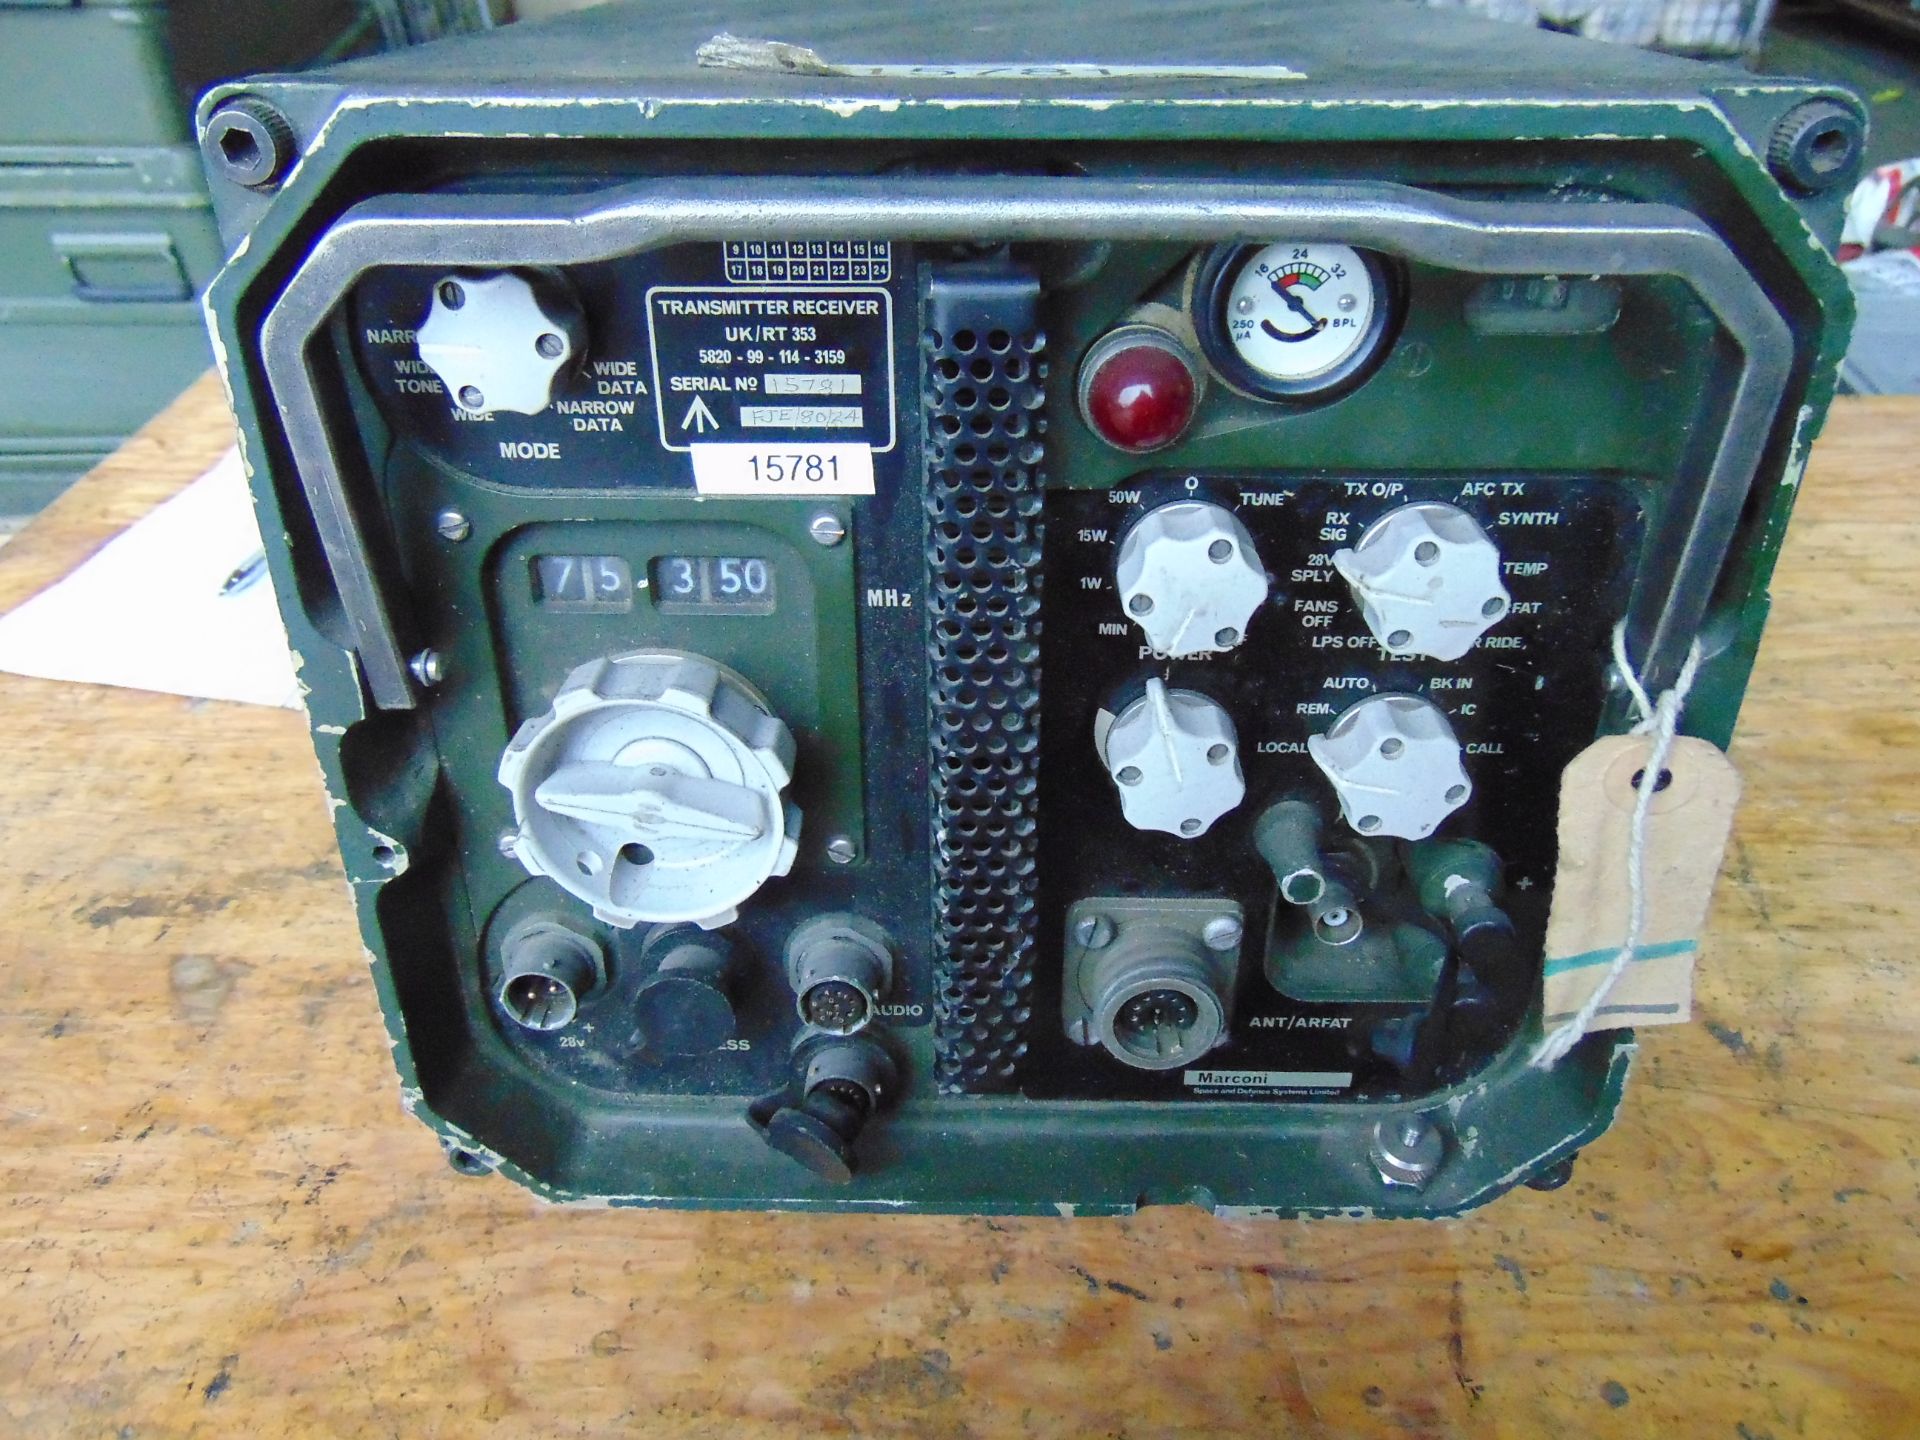 Clansman RT/UK 353 Vehicle Mounted Transmitter Receiver - Image 2 of 5